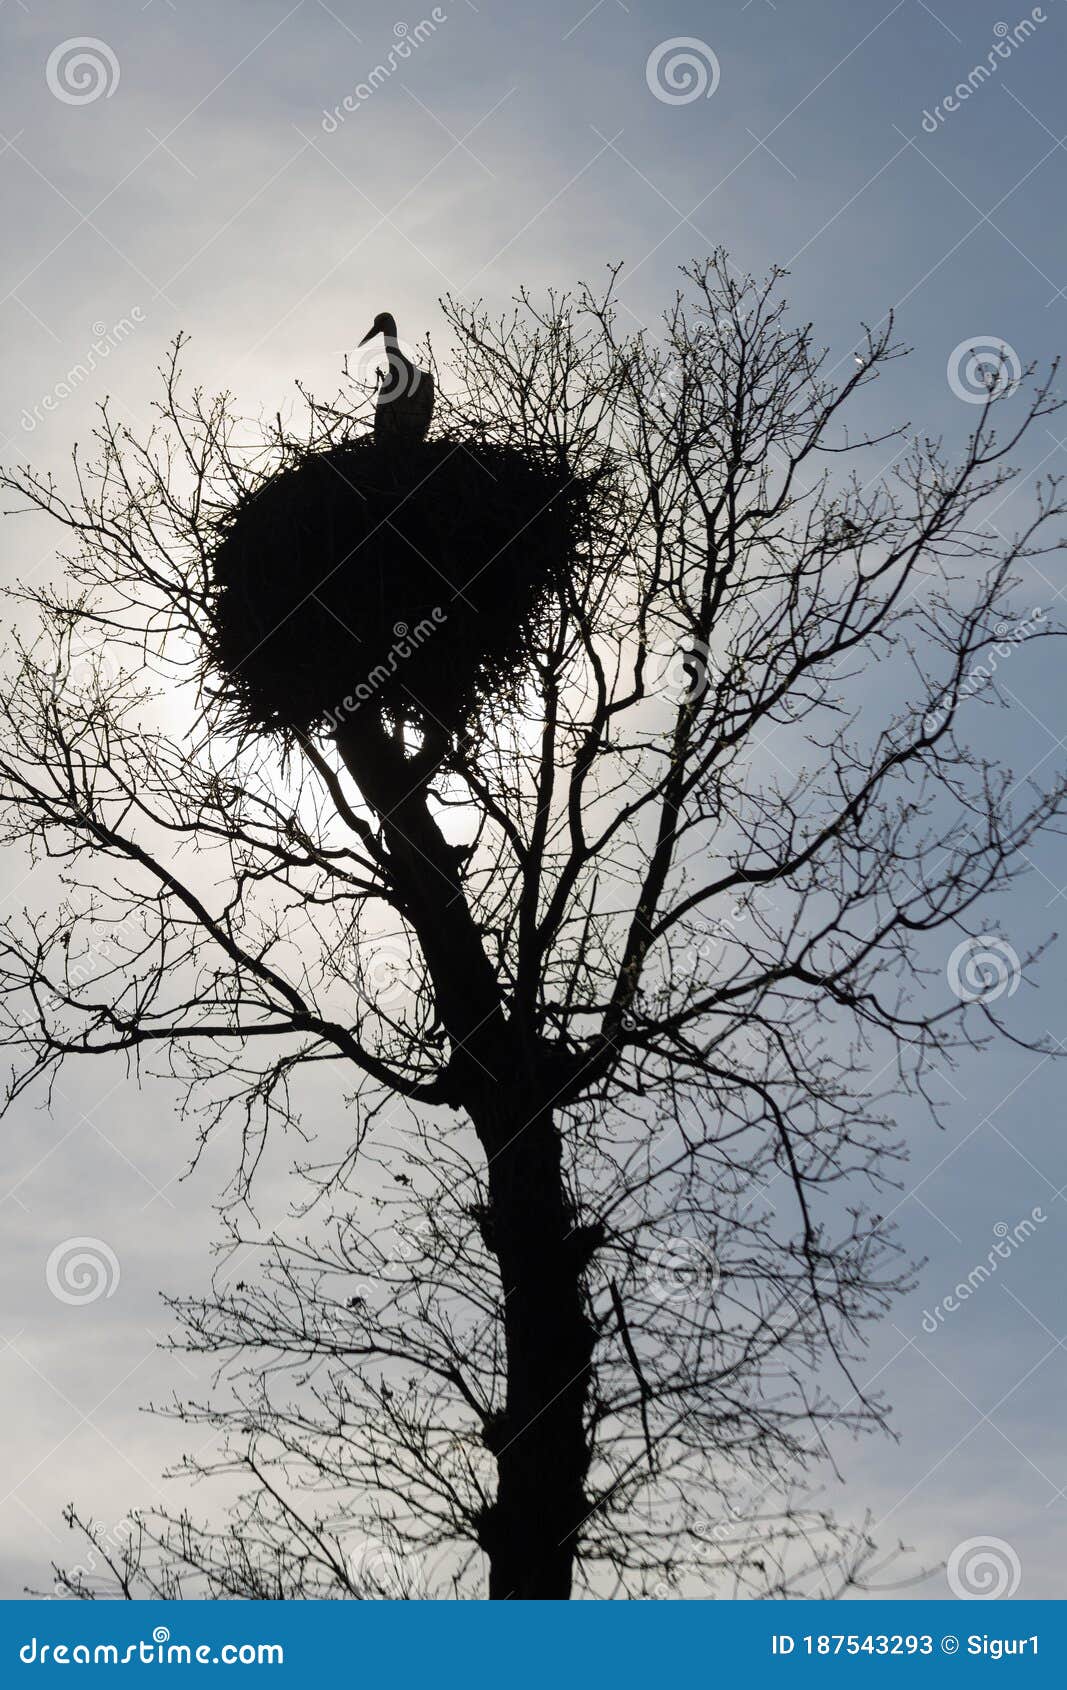 stork nest on top of an oak